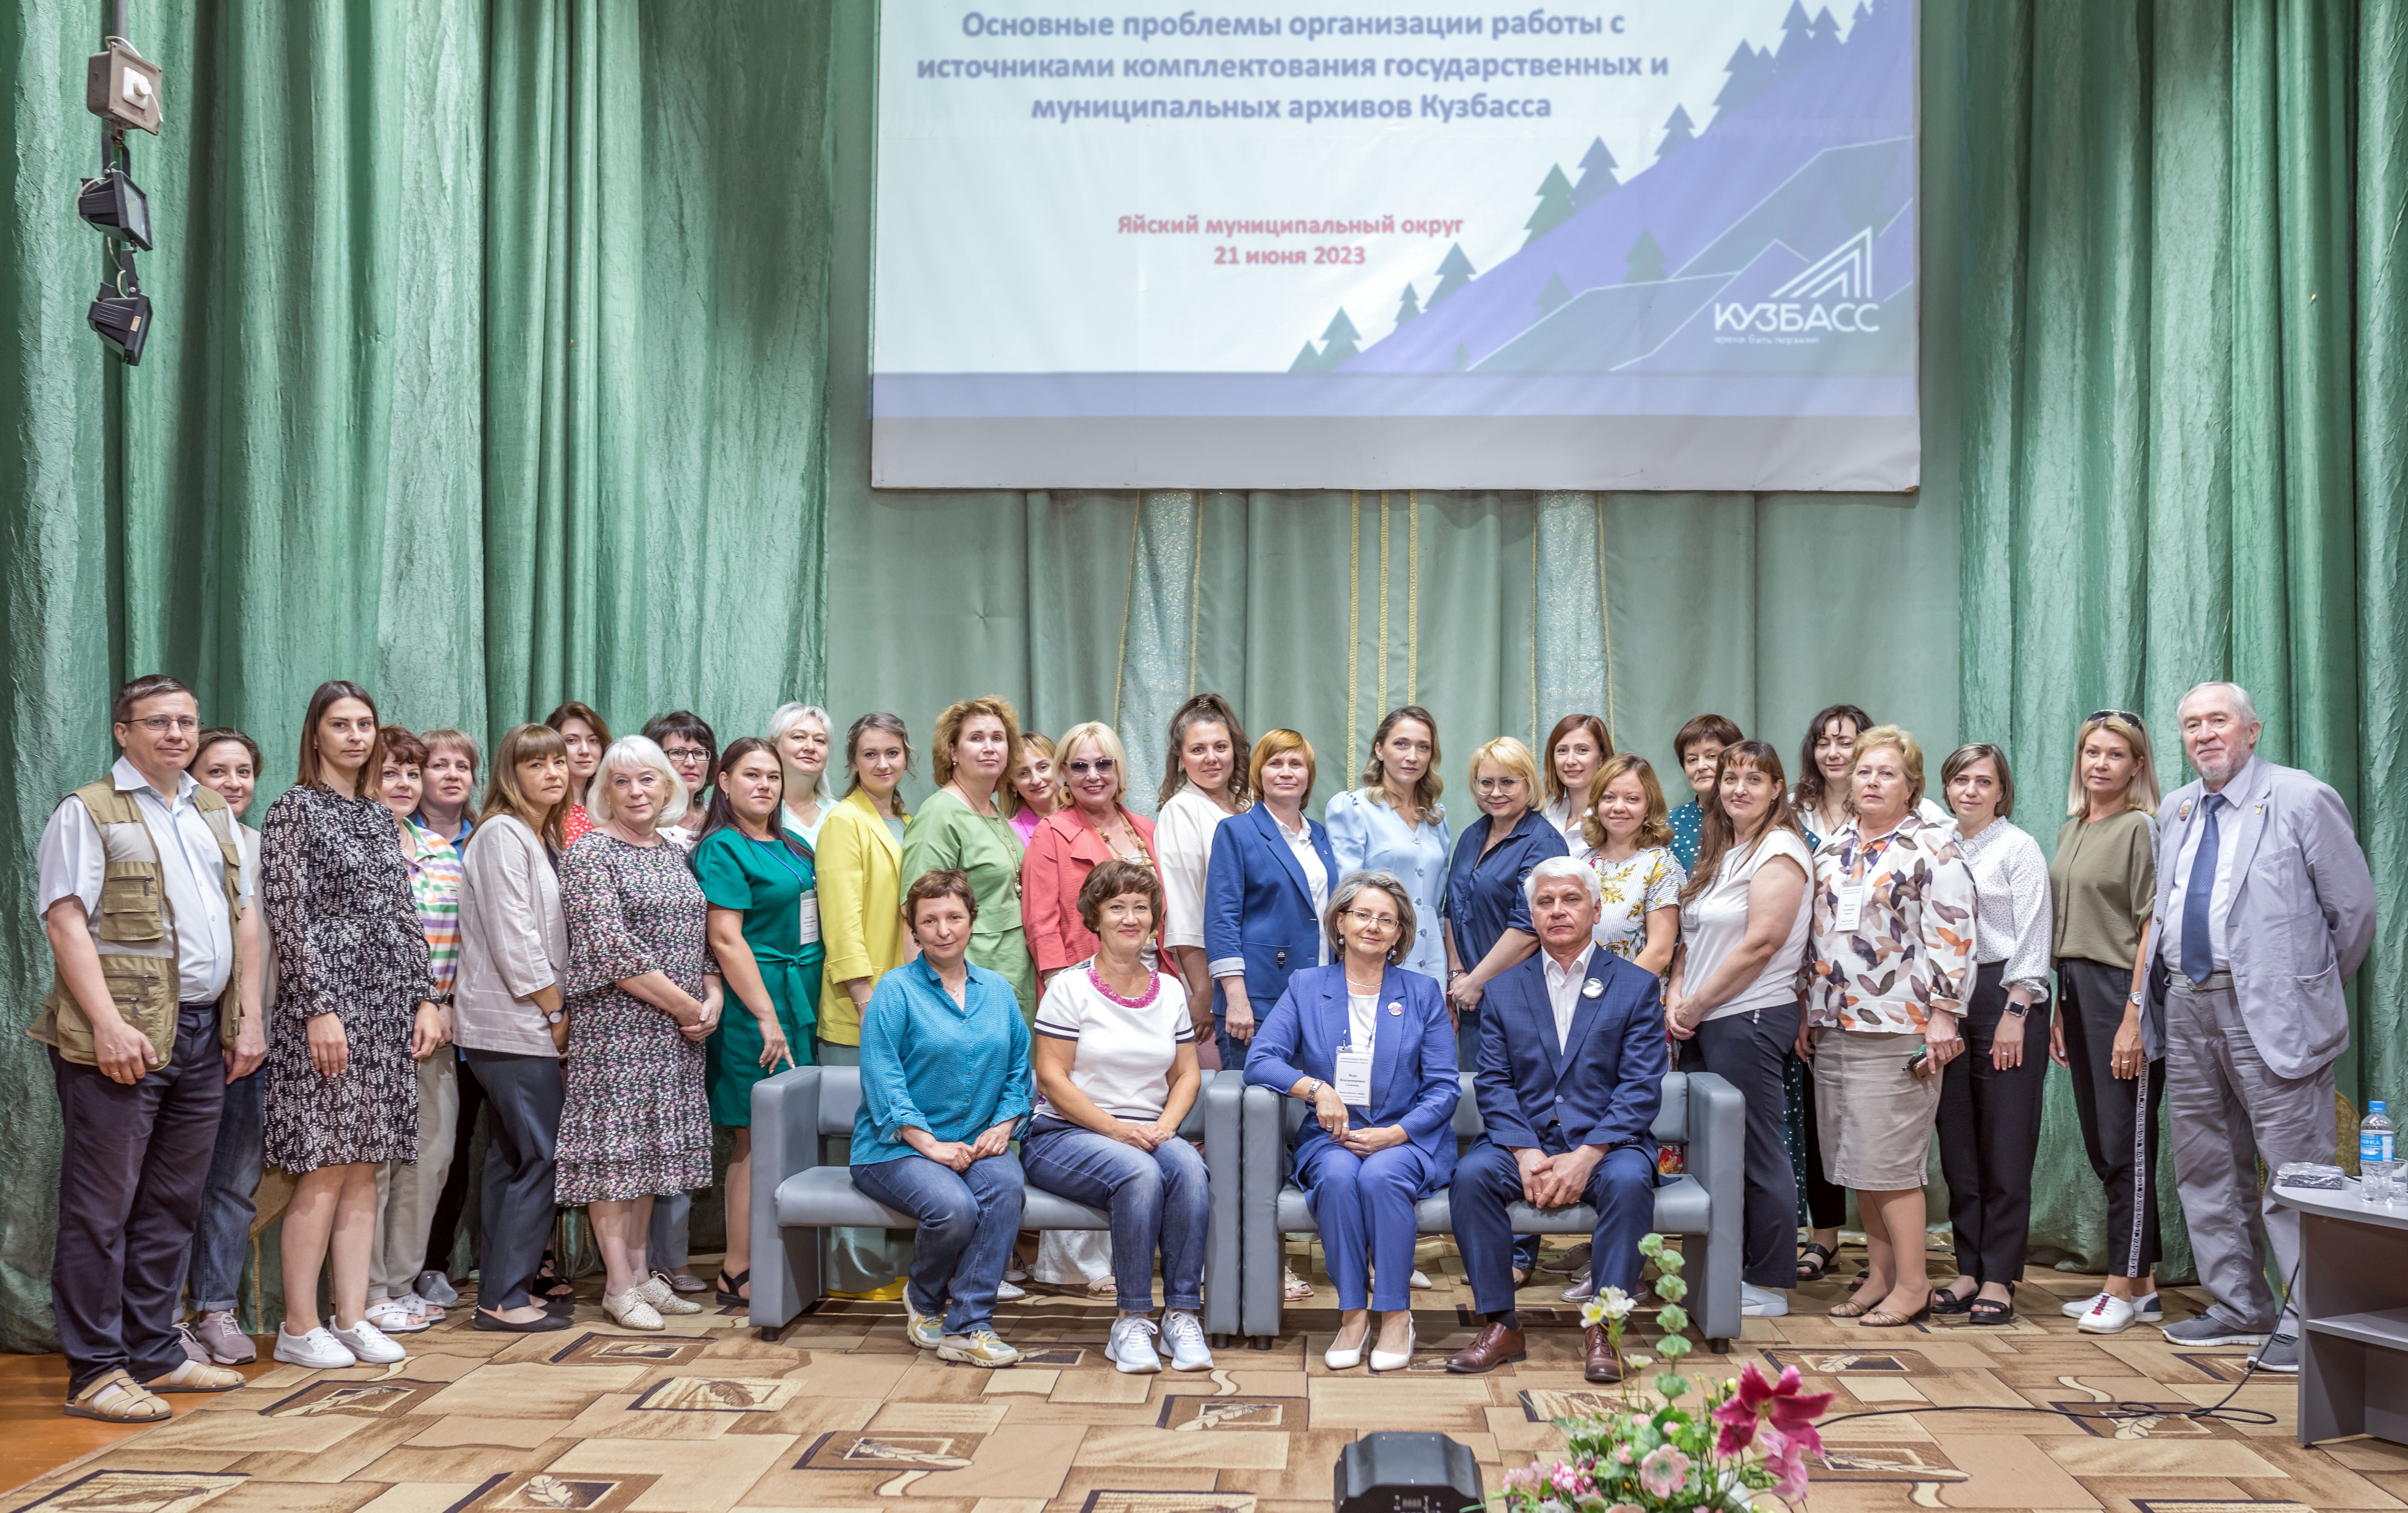 21 июня 2023 г. в пгт. Яя состоялся семинар-совещание руководителей архивных органов и учреждений Кузбасса.